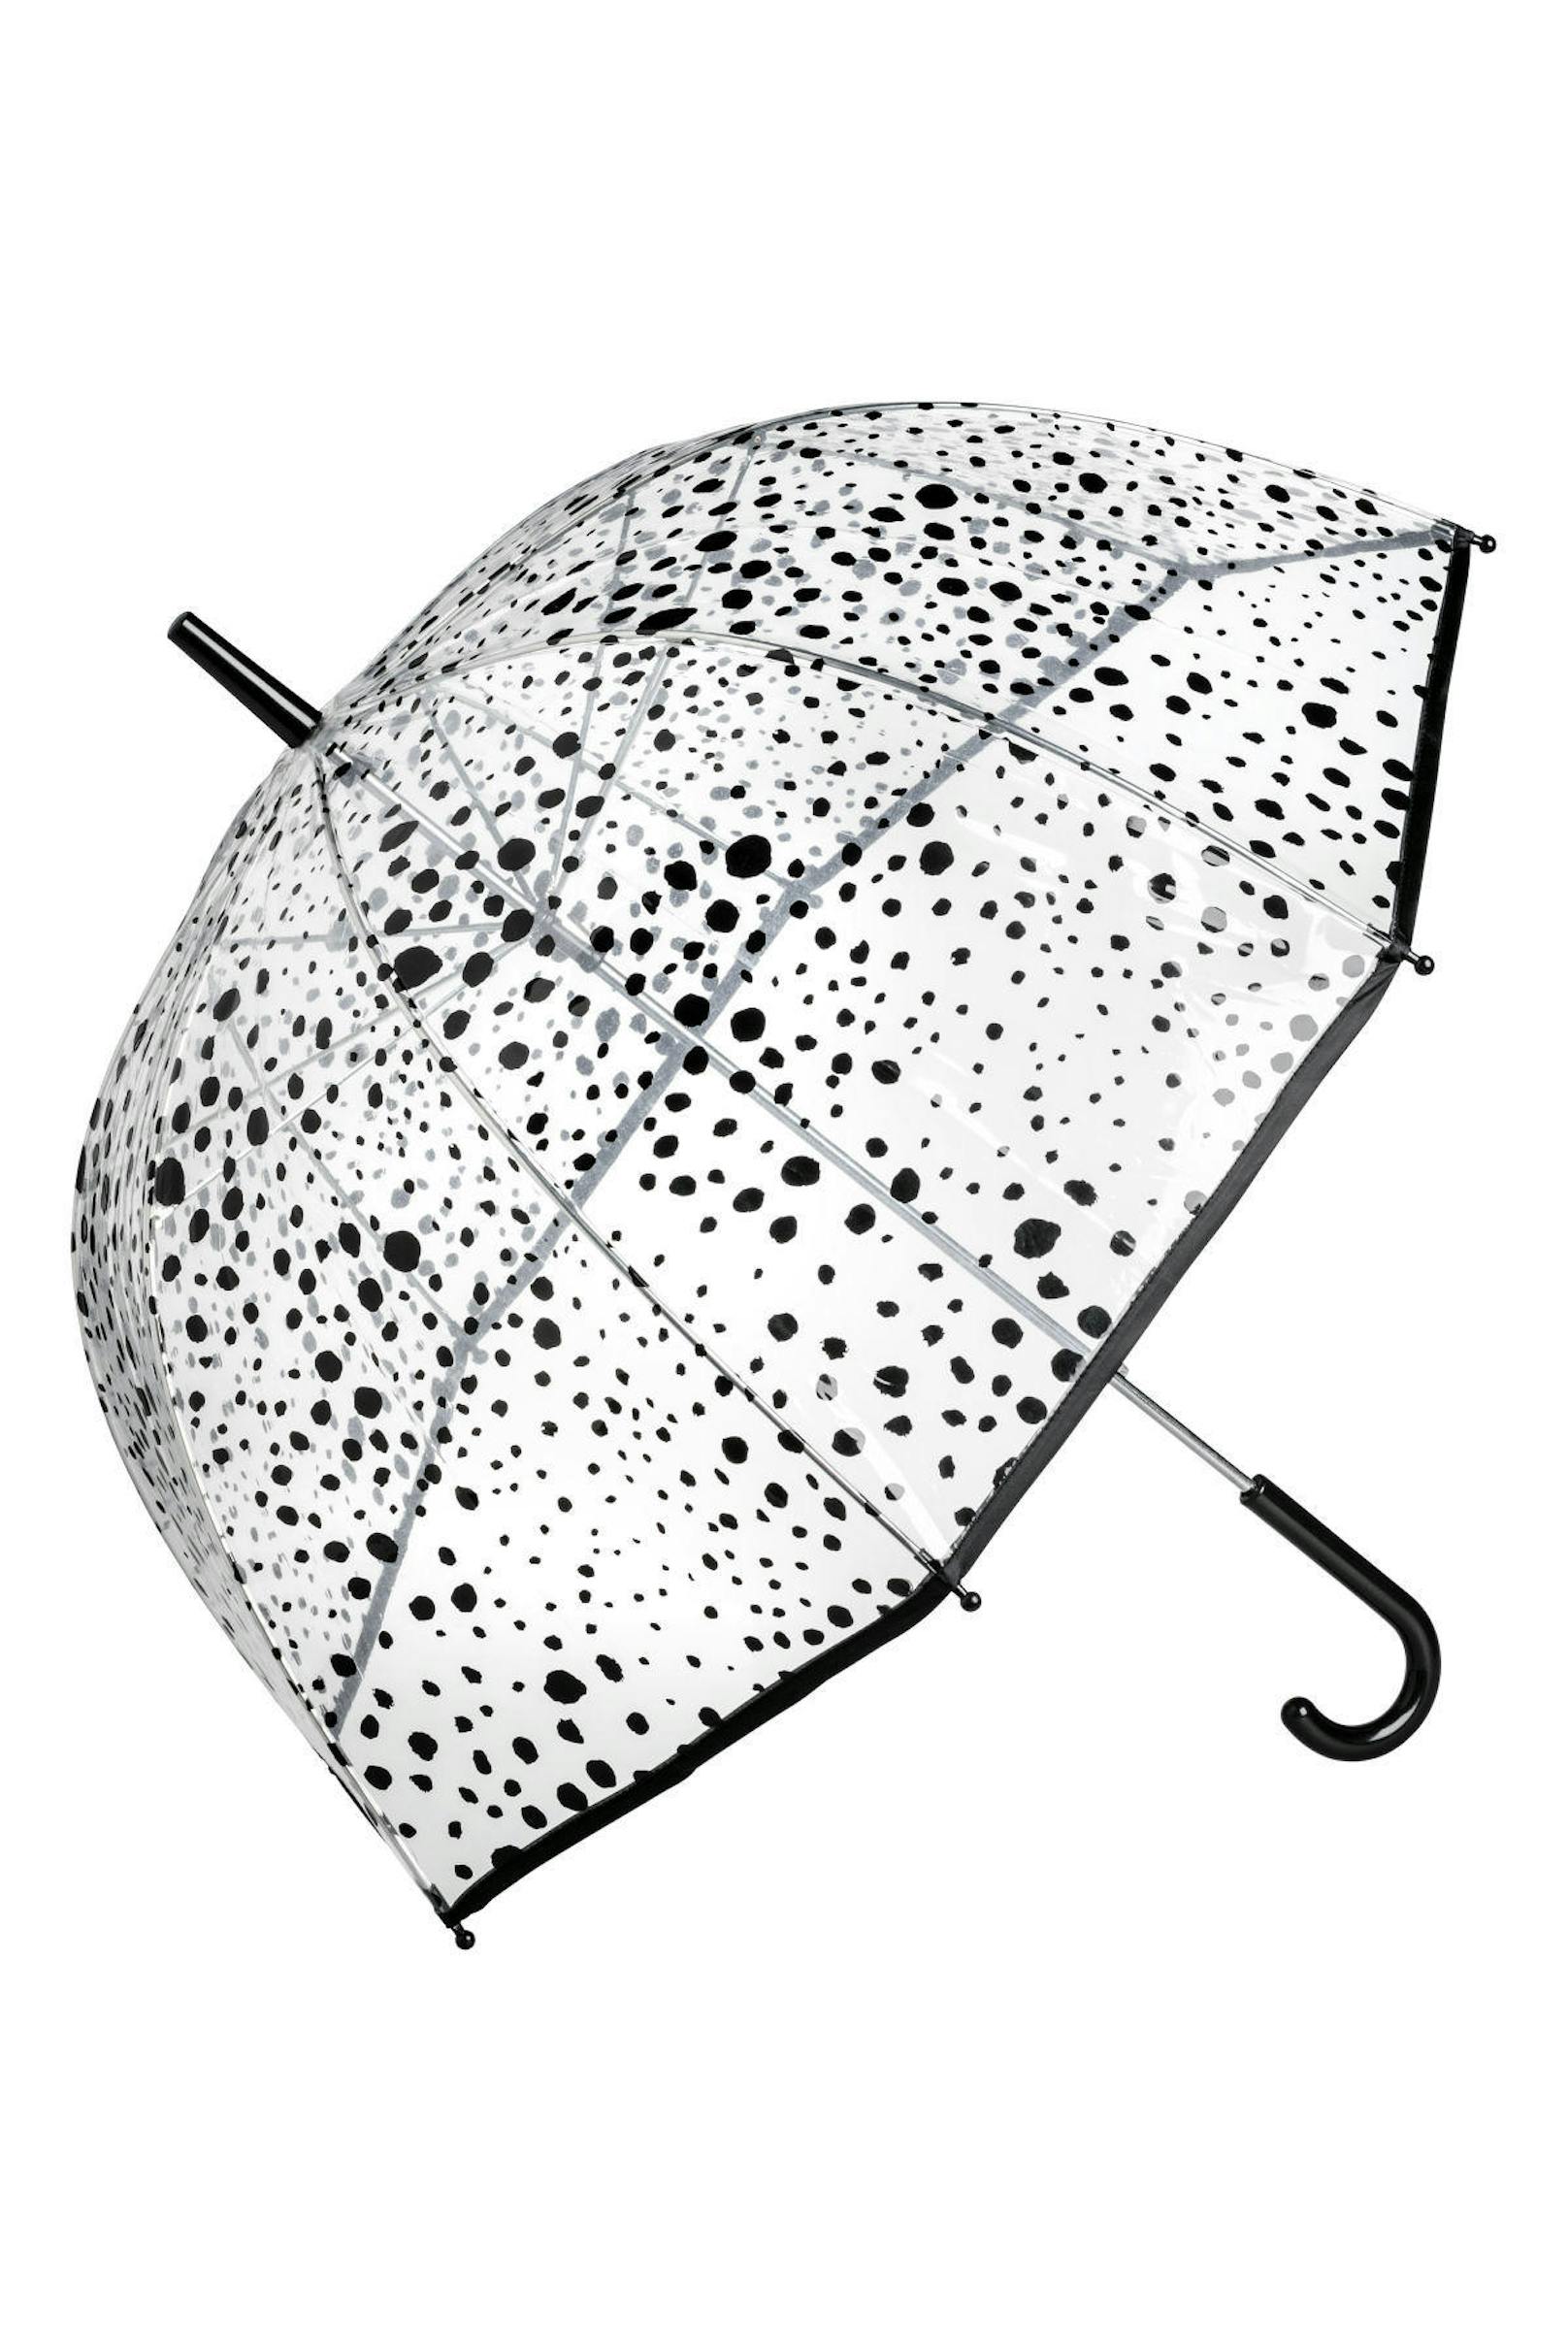 Der Klassiker: Regenschirm von H&M um 9,99 Euro.